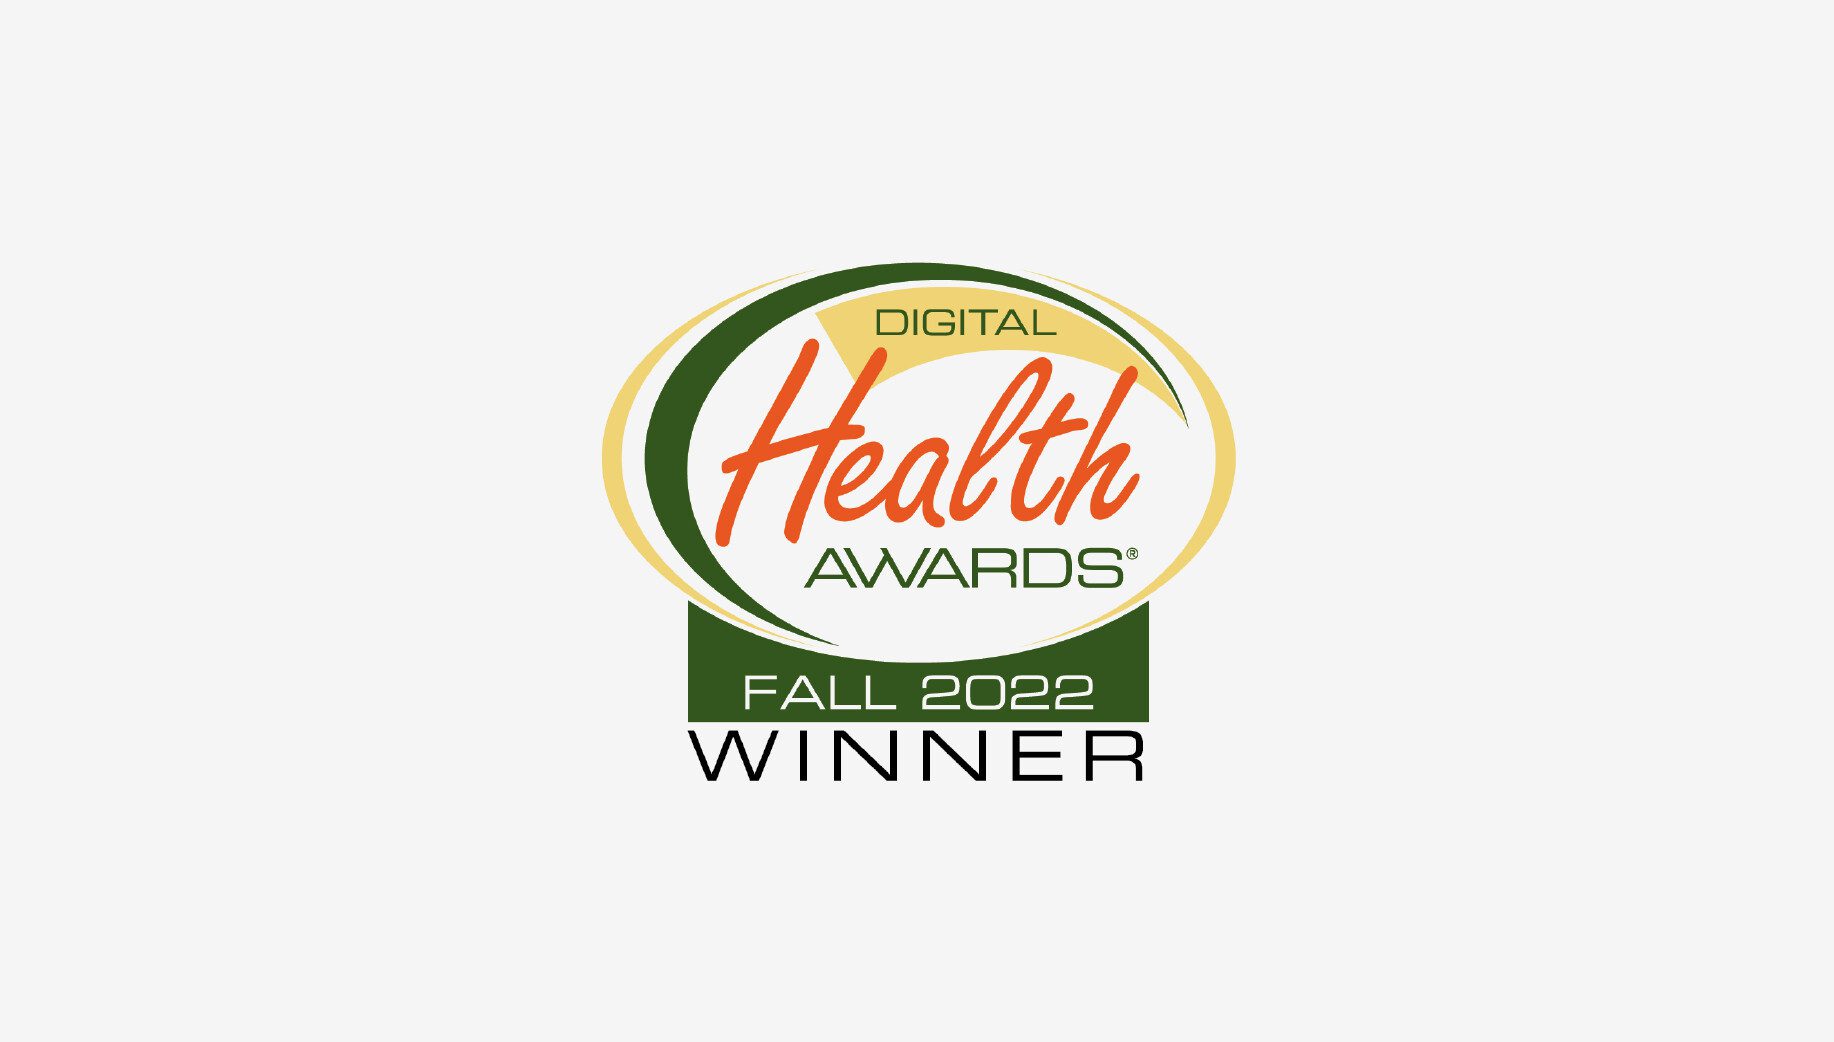 Digital Health Awards Winner logo